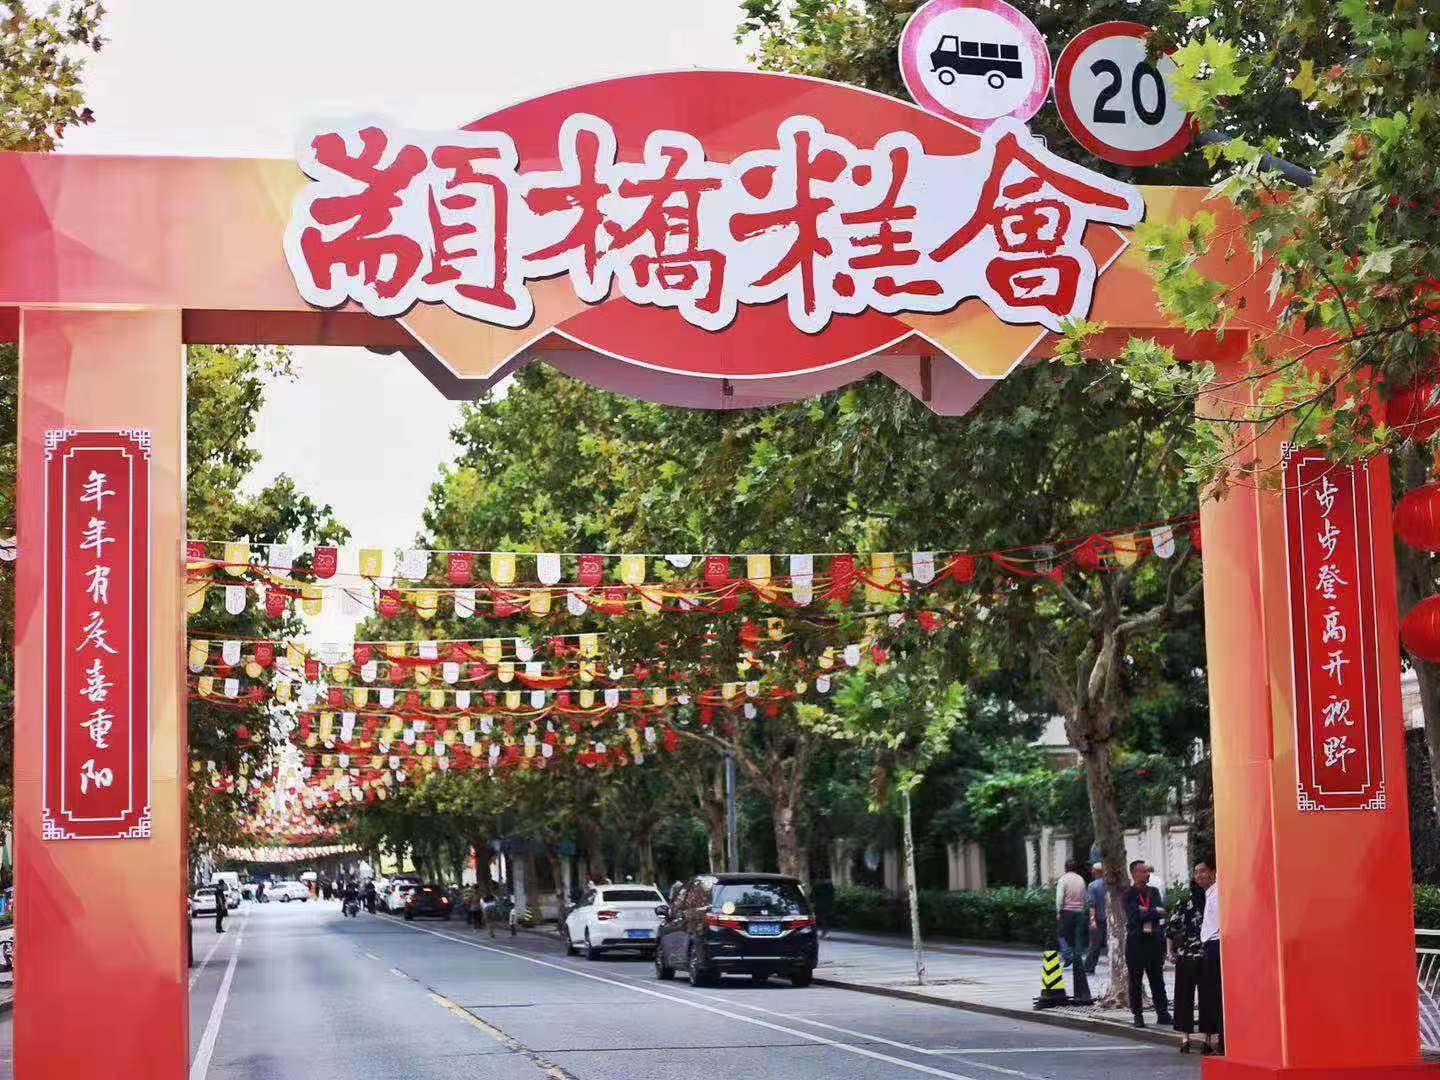 【携程攻略】上海州桥老街景点,州桥老街坐落嘉定城区中心，嘉定古镇的象征——“嘉定之根”；上海地…